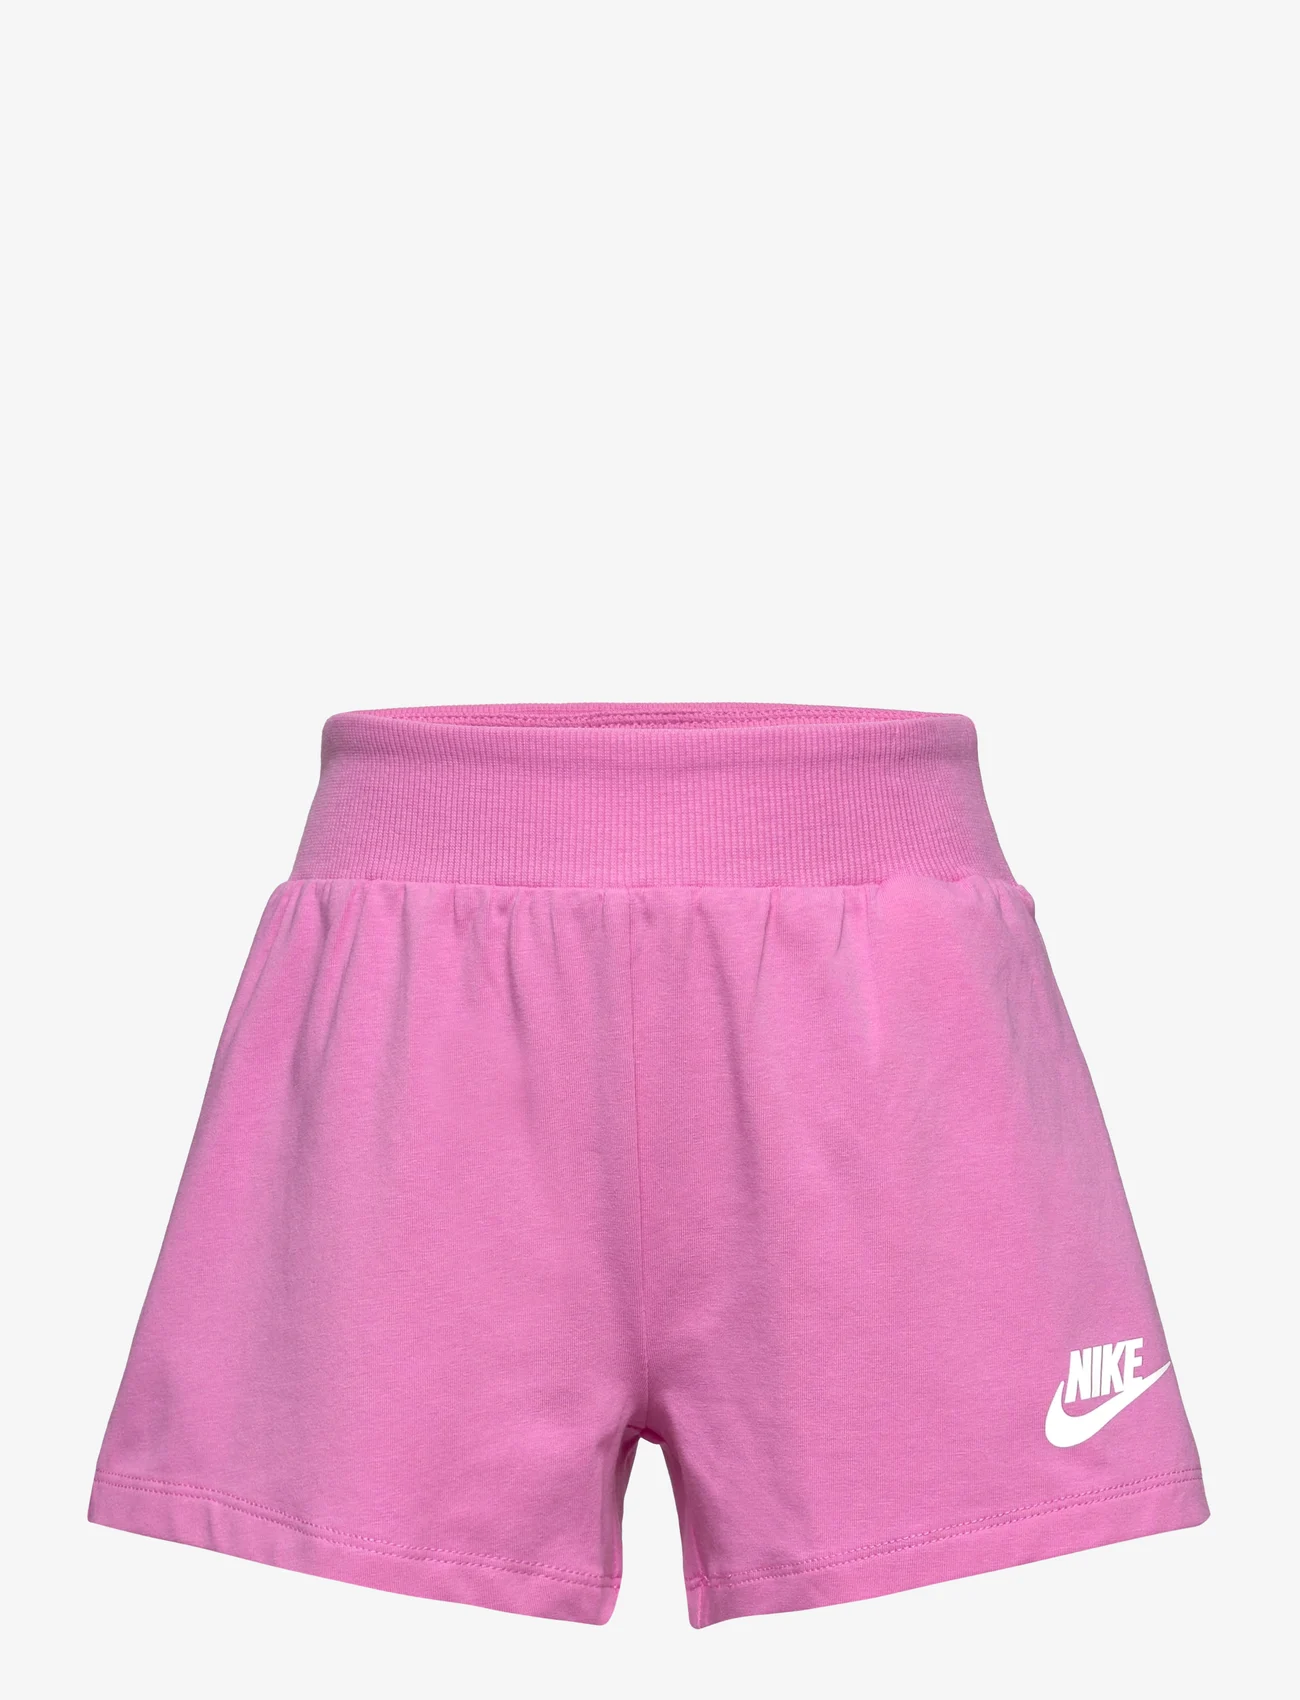 Nike - NKG JERSEY SHORT / NKG JERSEY SHORT - sweatshorts - playful pink - 0